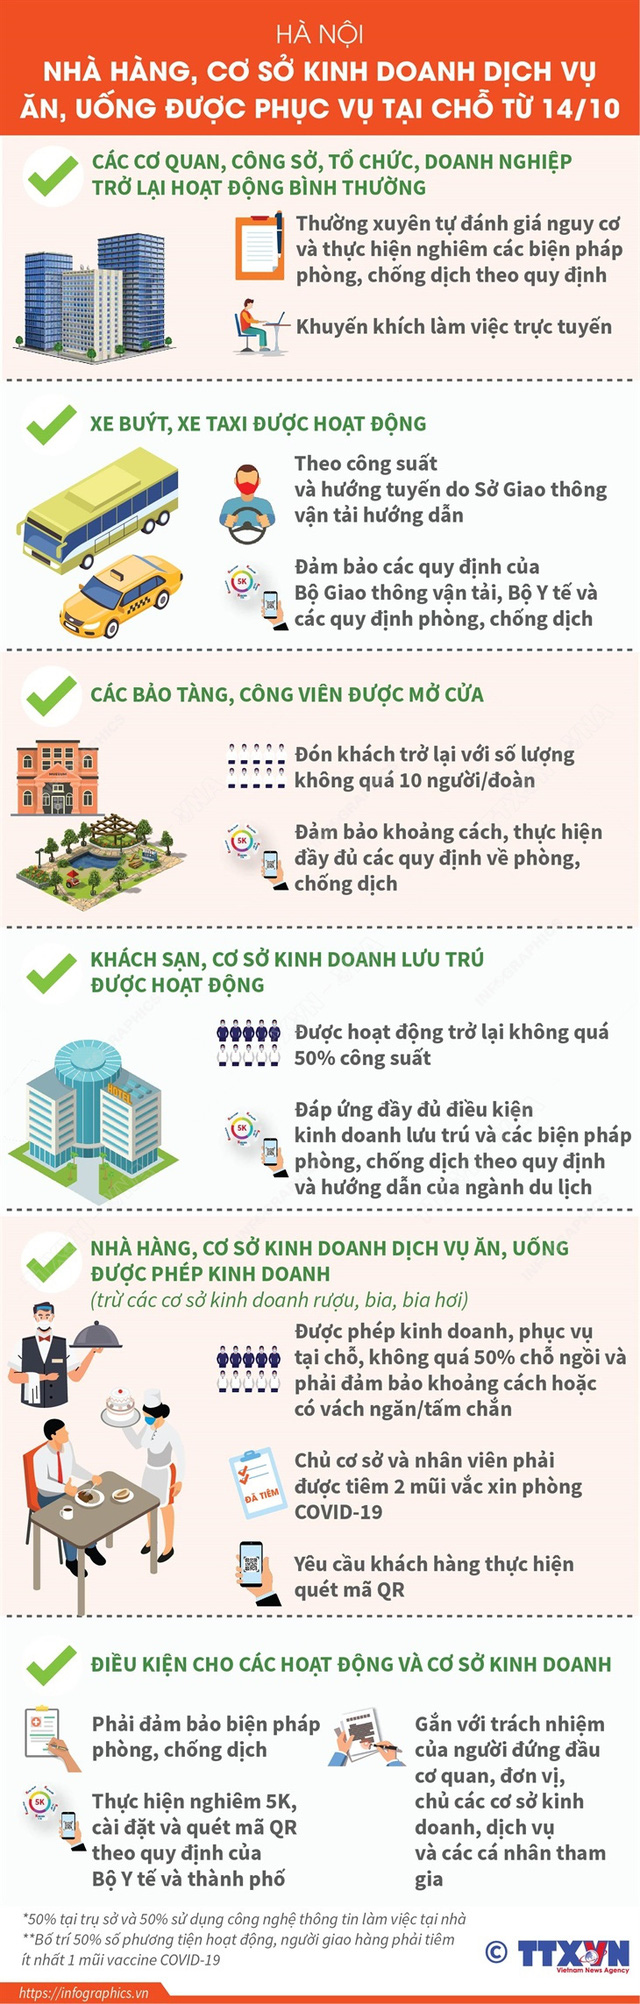 [Infographic] 5 nhóm hoạt động, dịch vụ được mở lại tại Hà Nội từ hôm nay (14/10) - Ảnh 1.